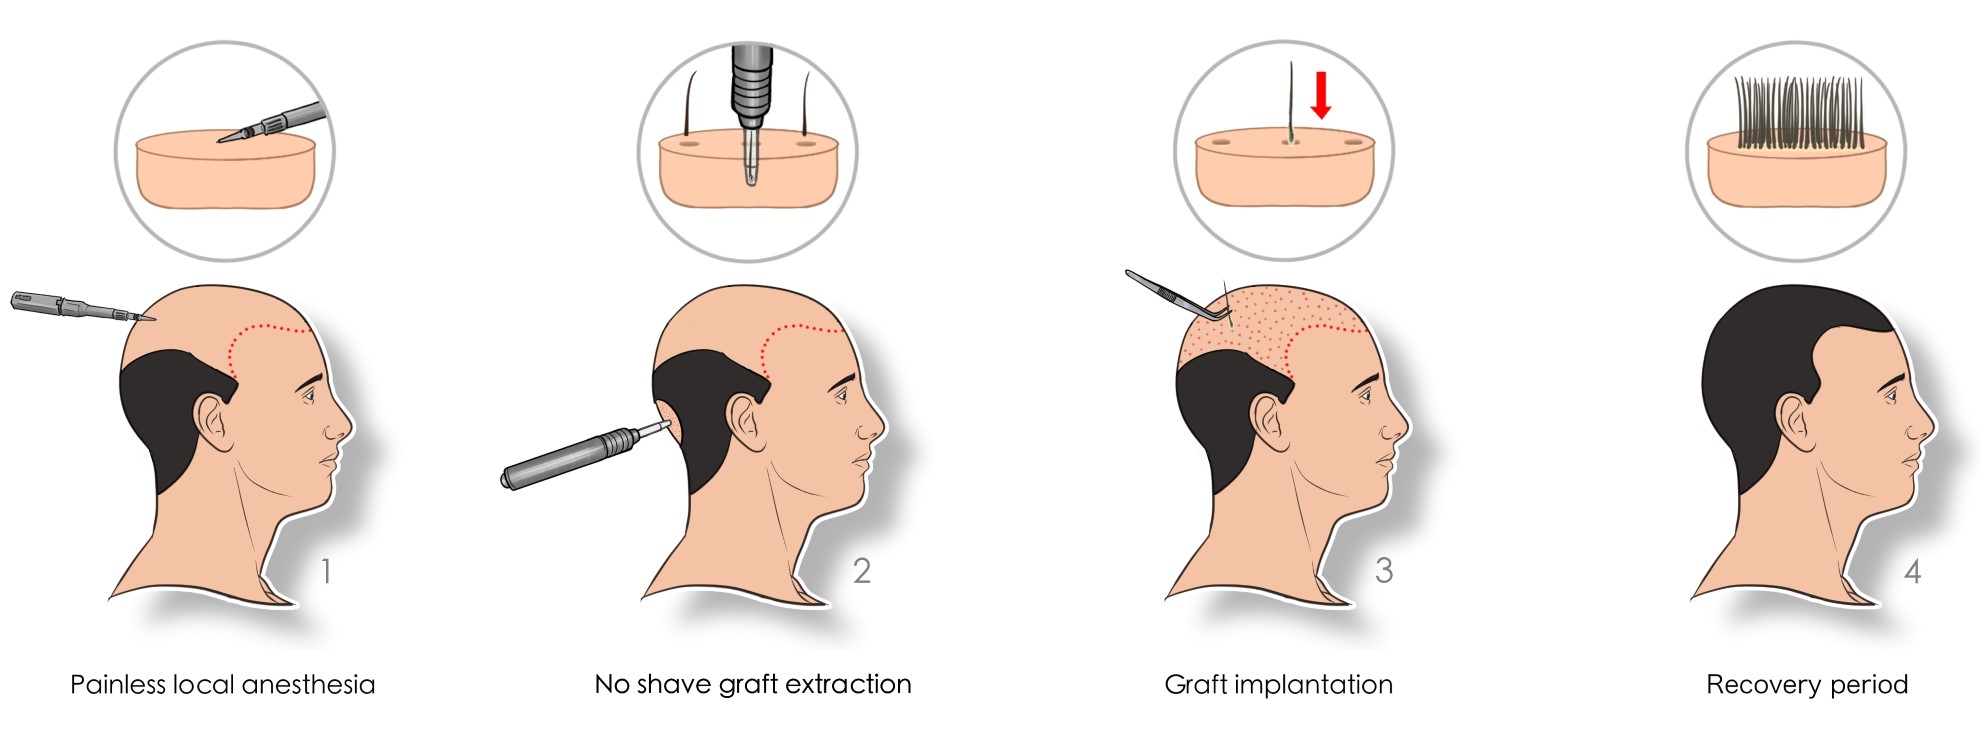 hair transplant process 4 main steps